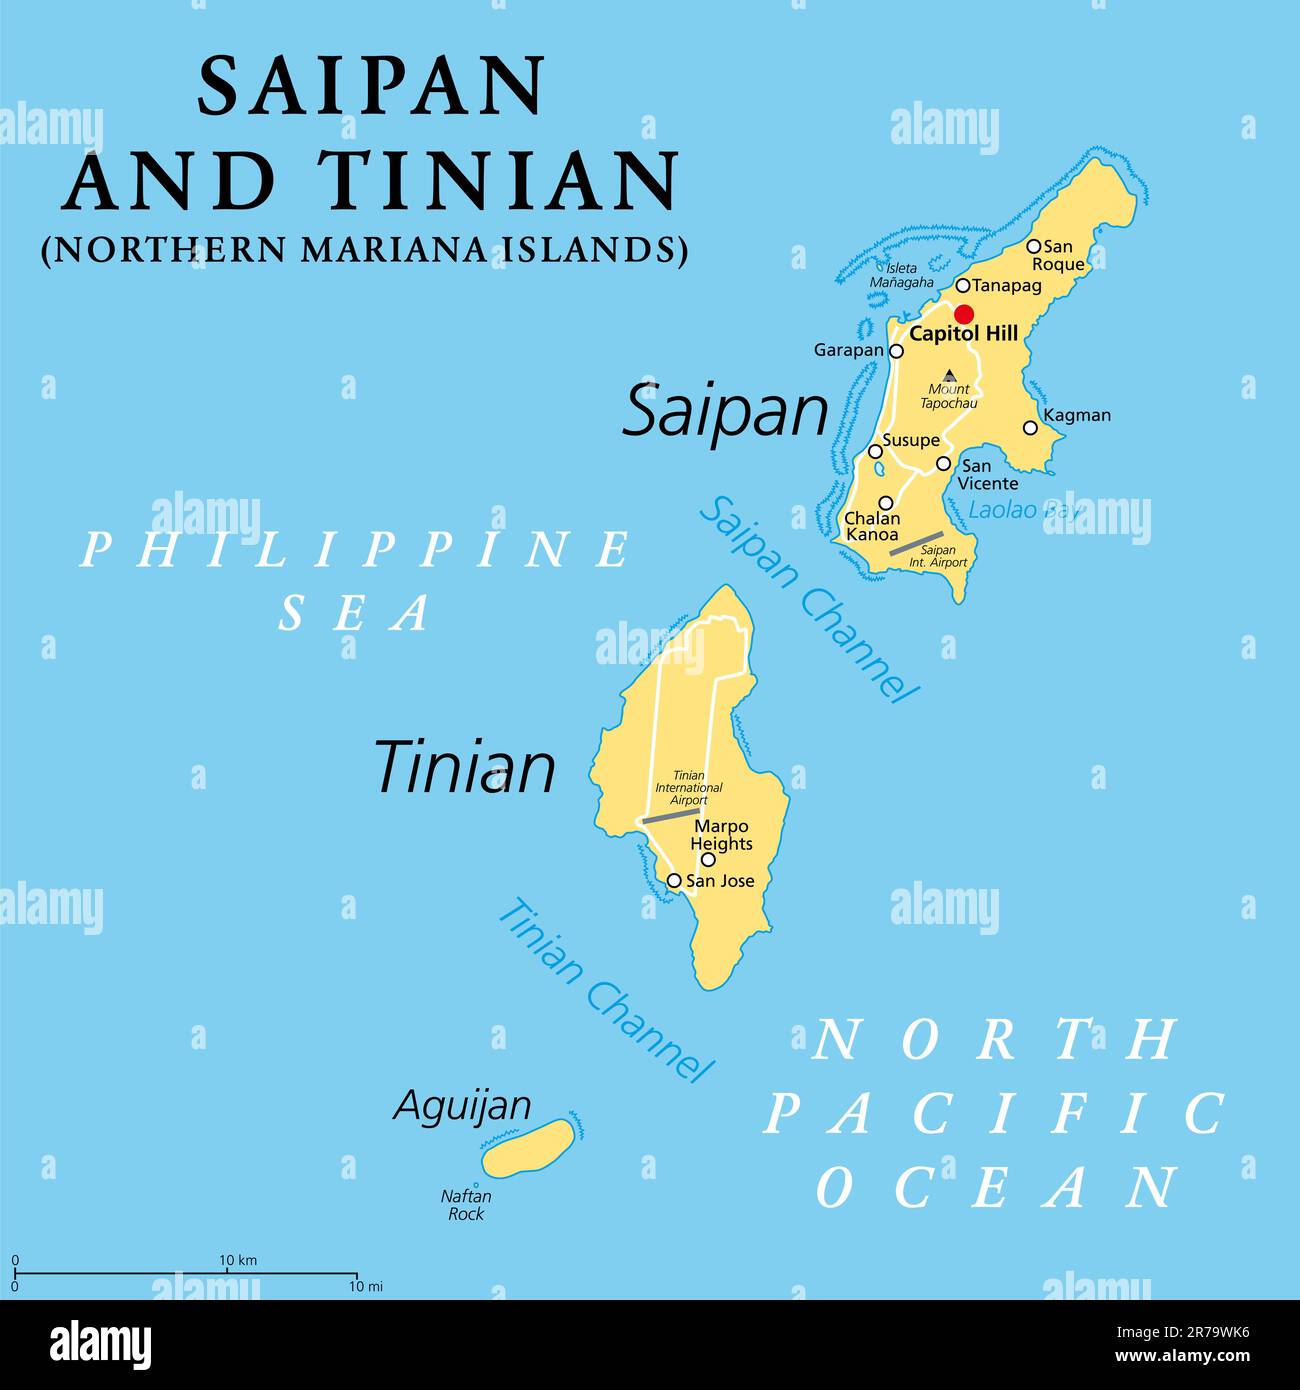 Saipan e Tinian, Isole Marianne Settentrionali, mappa politica. Isole dell'Arcipelago delle Marianne. Territorio non incorporato e commonwealth degli Stati Uniti. Foto Stock